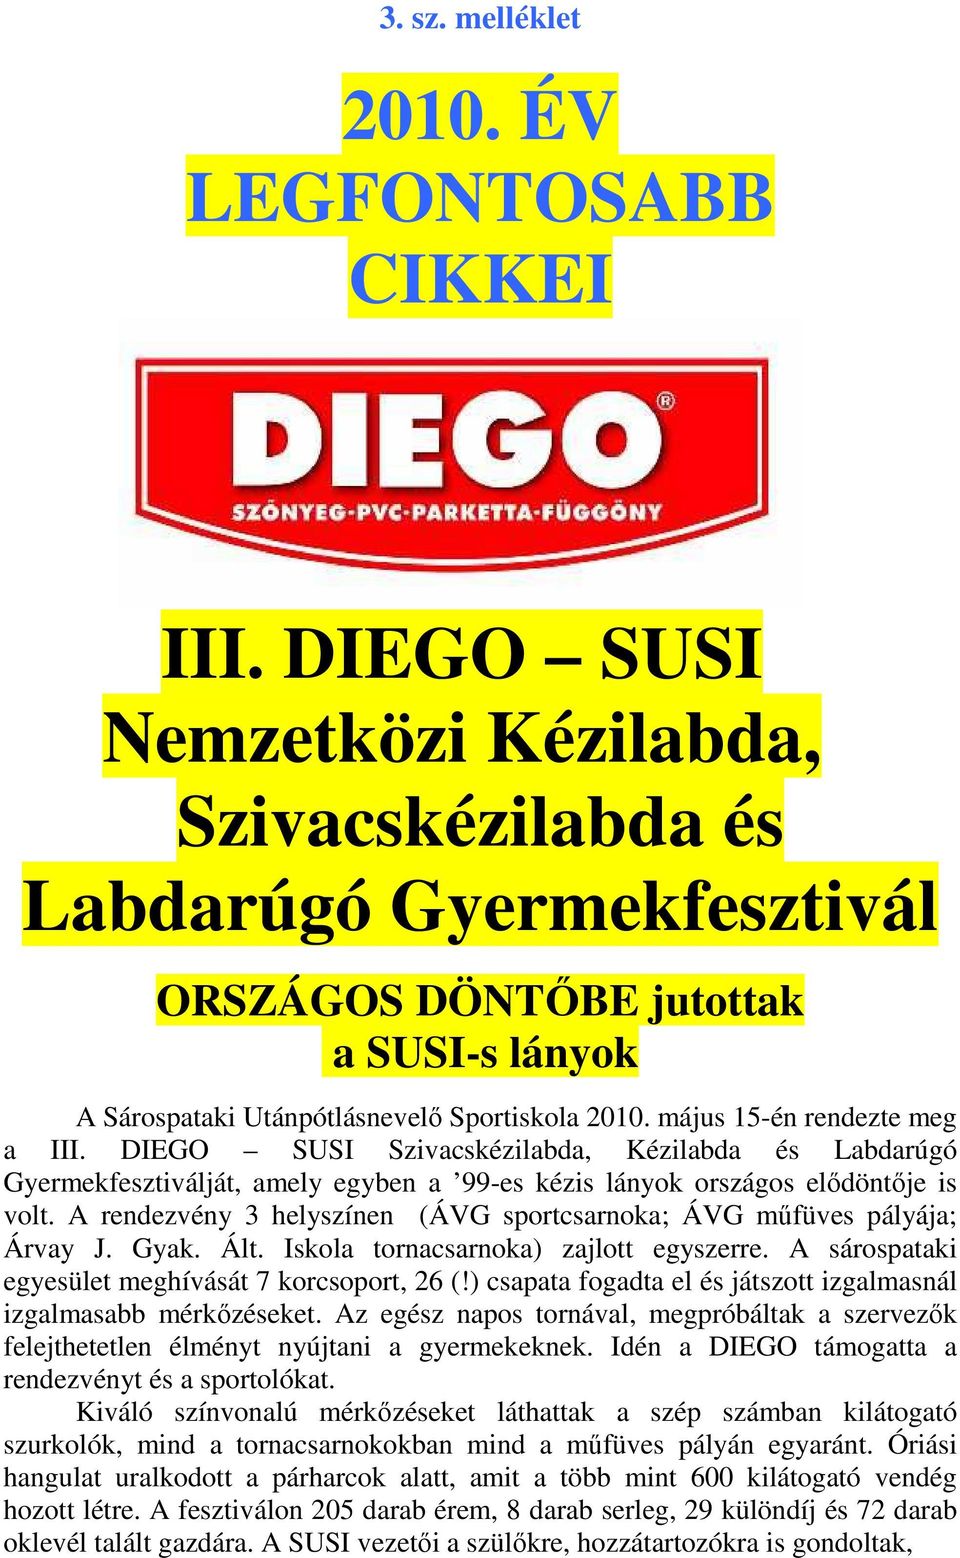 DIEGO SUSI Szivacskézilabda, Kézilabda és Labdarúgó Gyermekfesztiválját, amely egyben a 99-es kézis lányok országos elıdöntıje is volt.